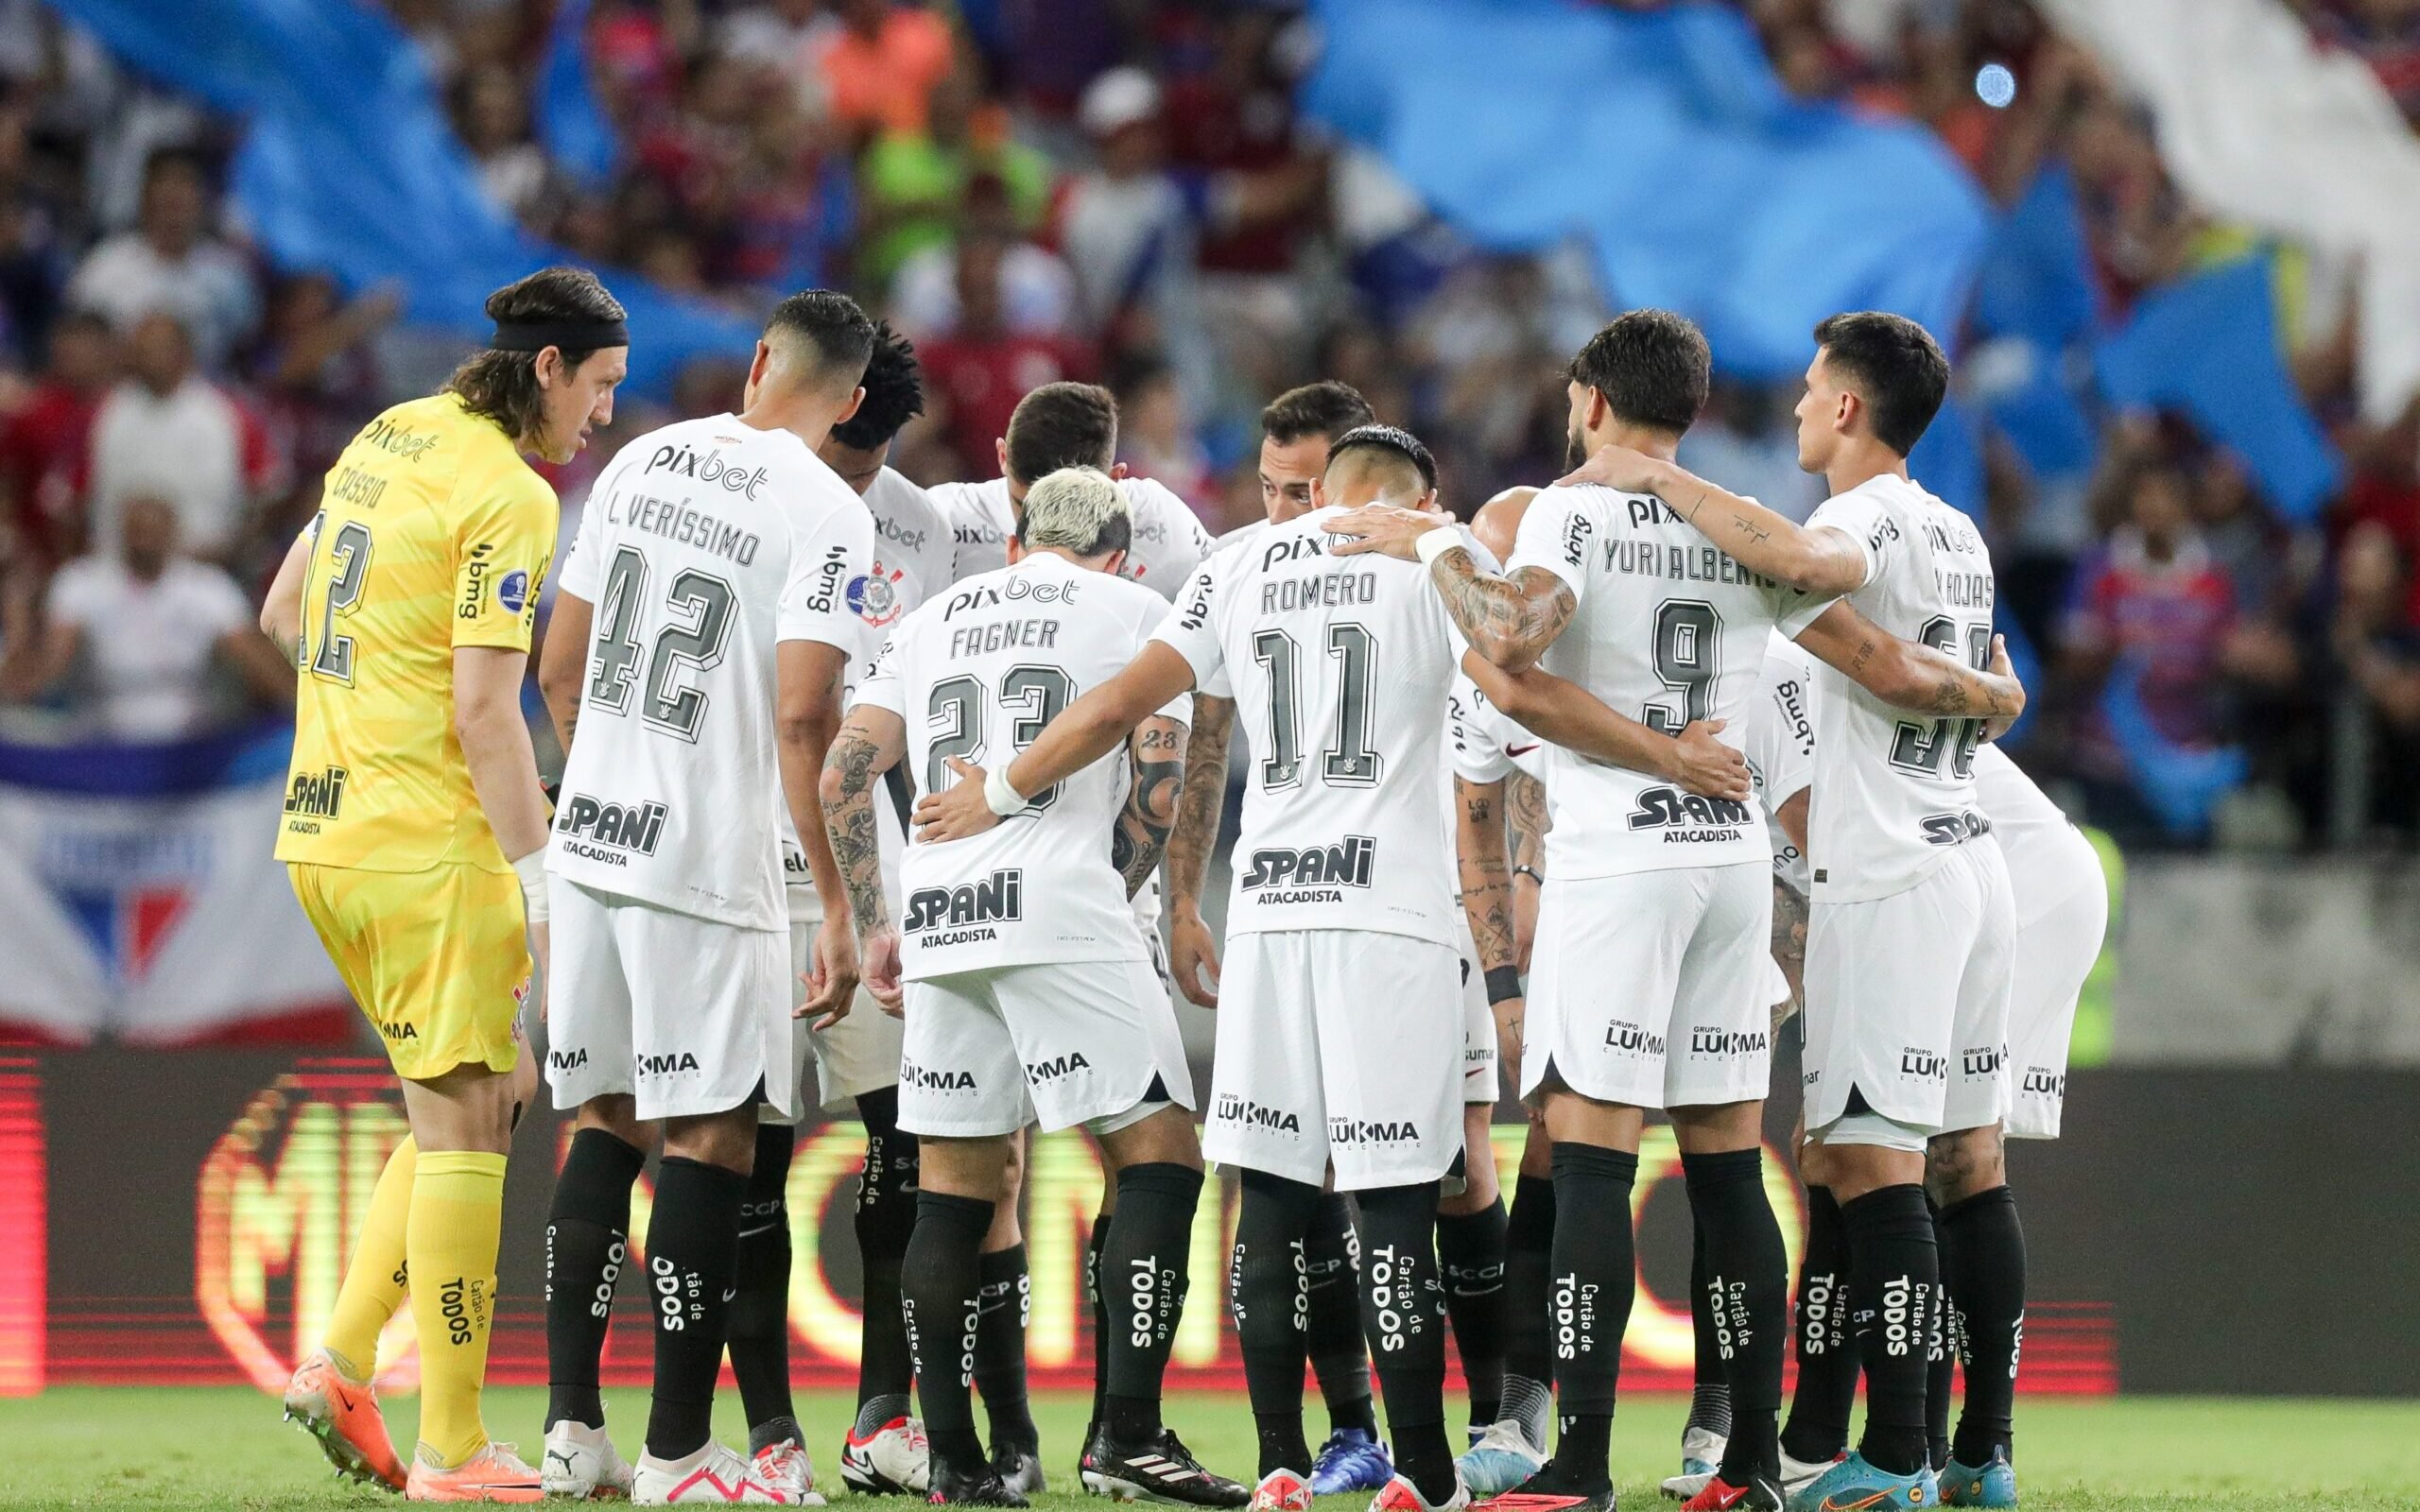 Campeonato Paulista 2023: O que esperar da próxima edição